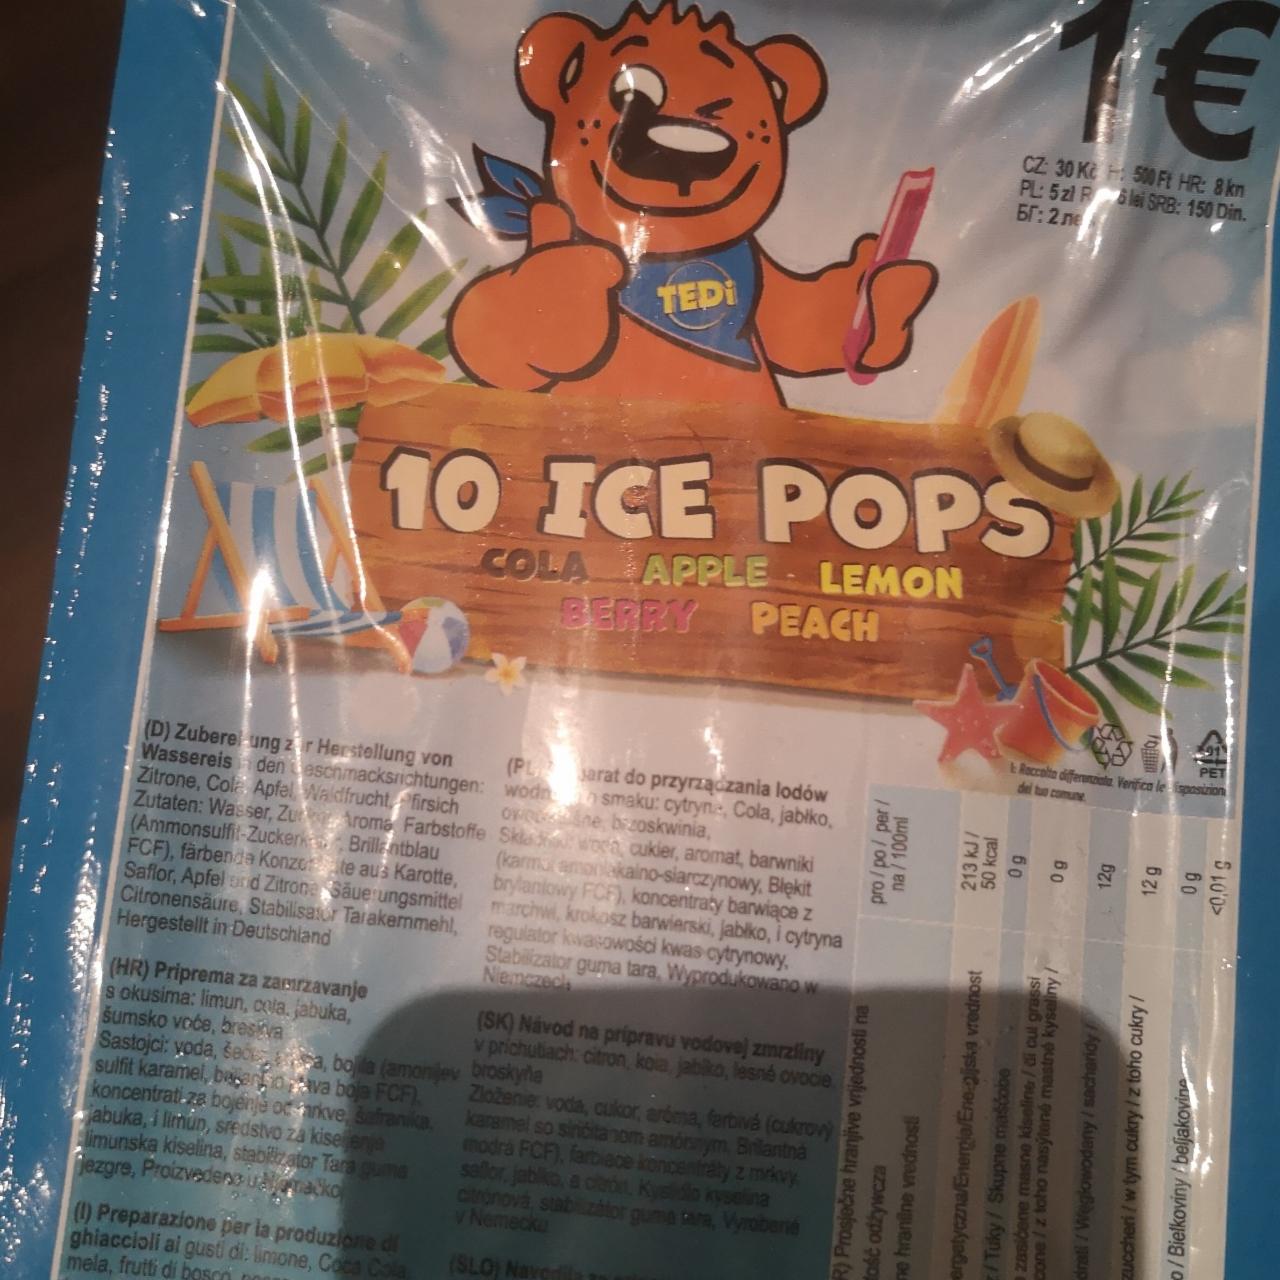 Fotografie - 10 Ice Pops Tedi